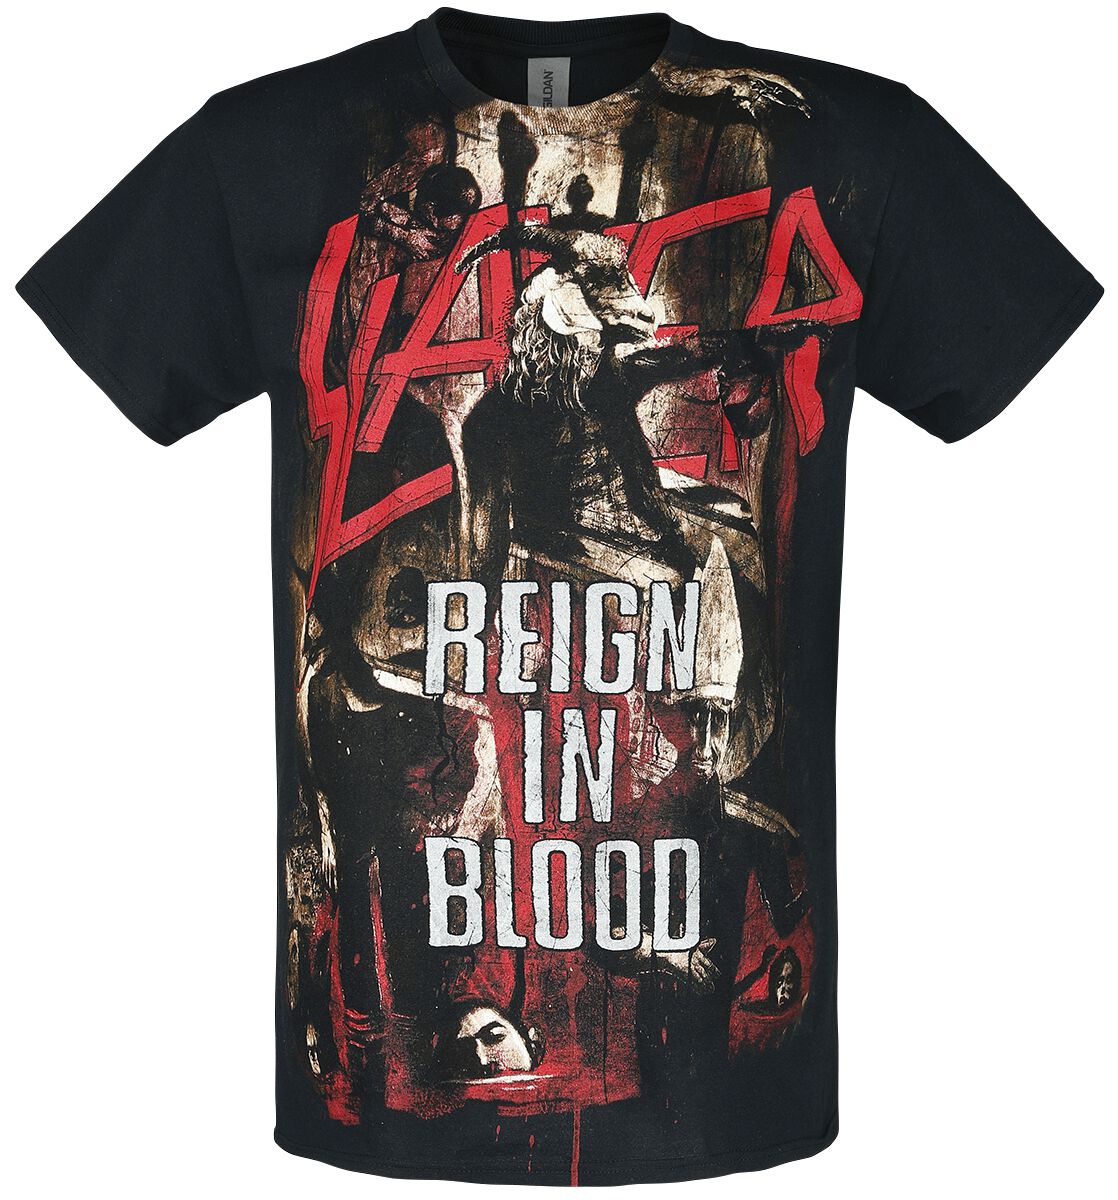 Slayer Reign In Blood Männer T-shirt Schwarz Männer Band-merch, Bands